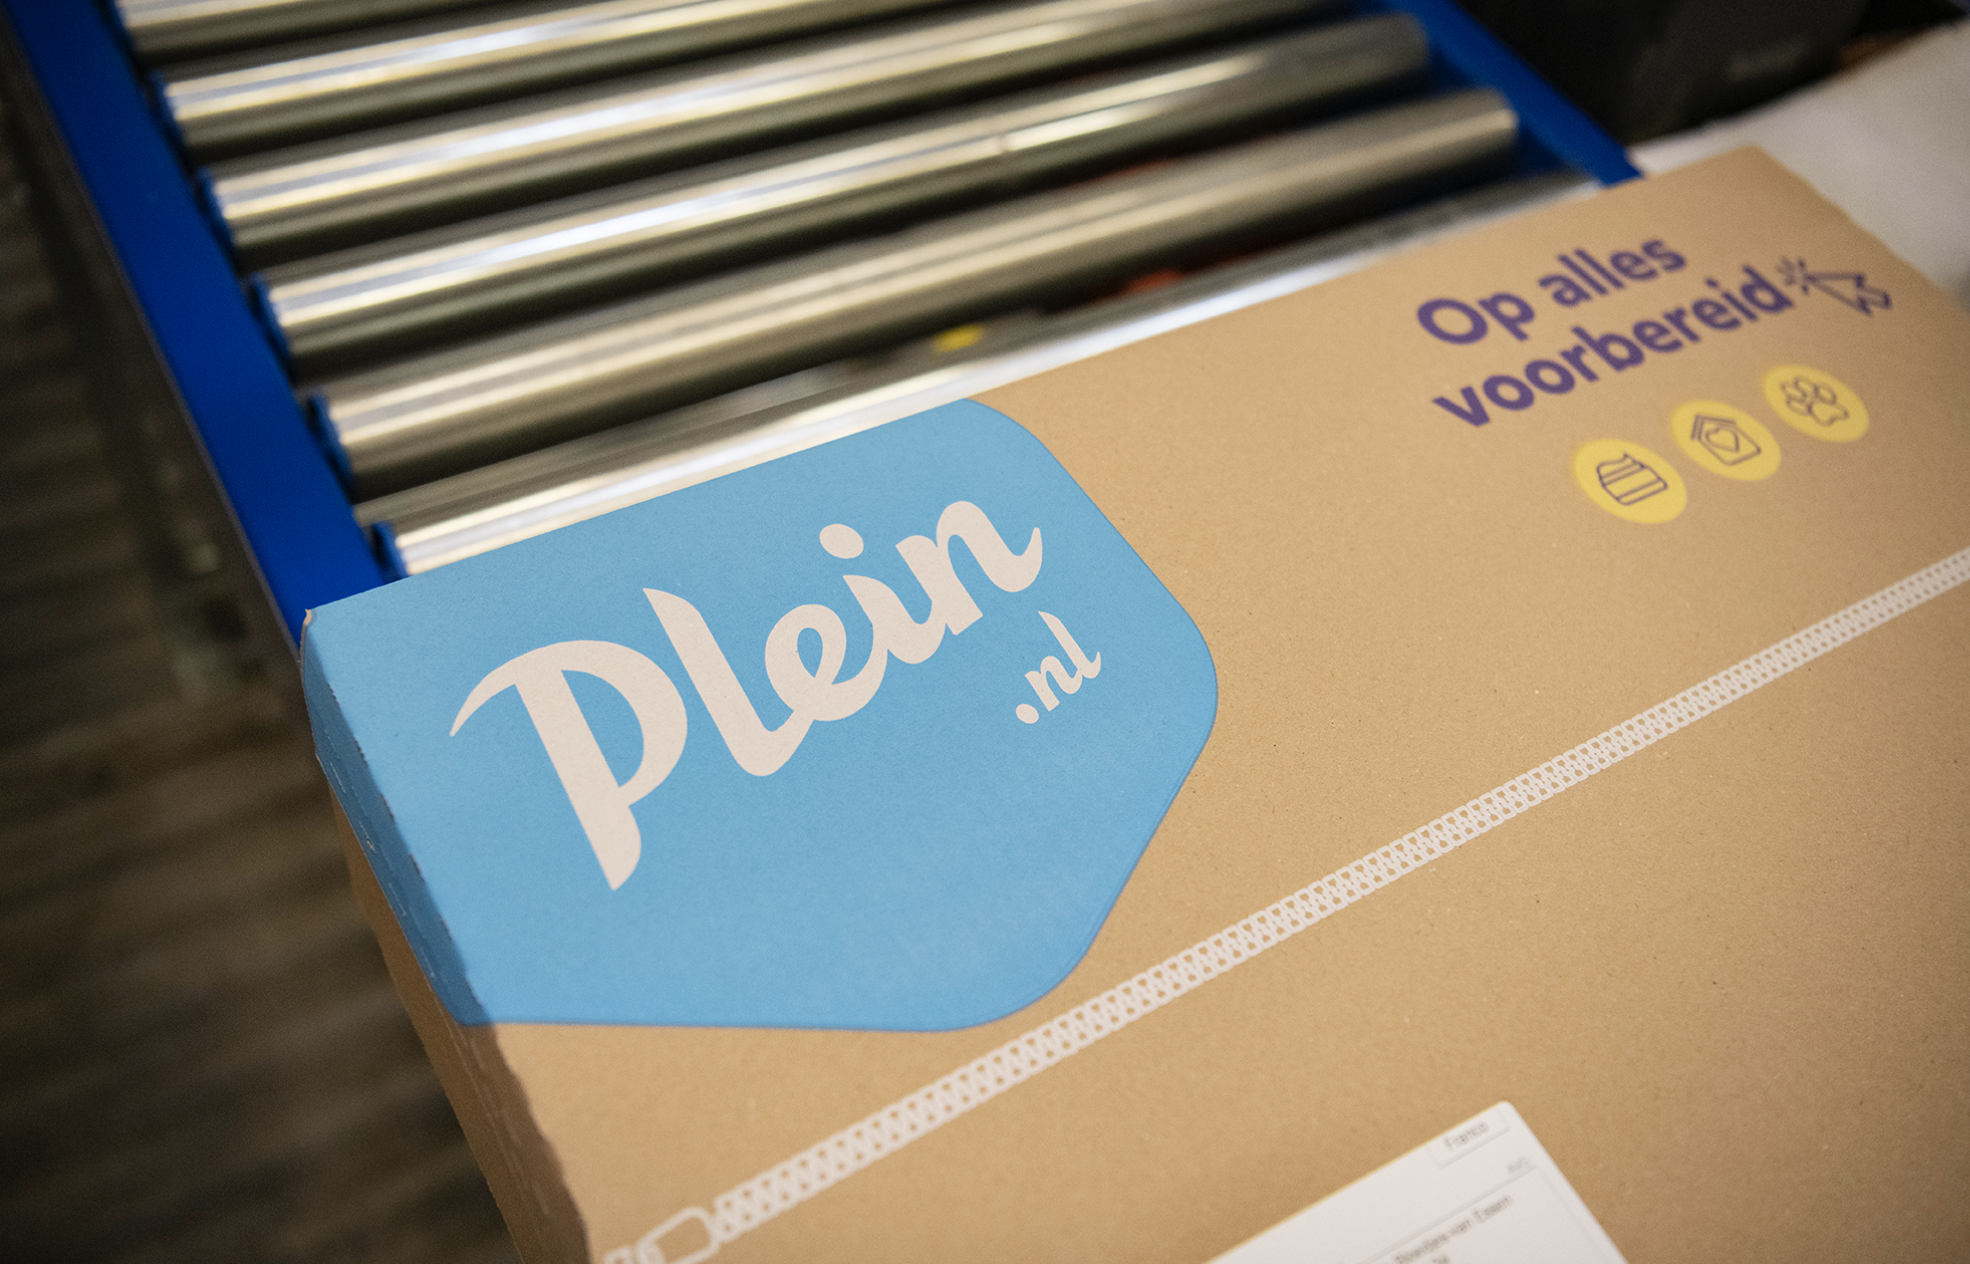 Online drogisterij Plein.nl: 95% minder plastic opvulmateriaal en einde aan te grote dozen